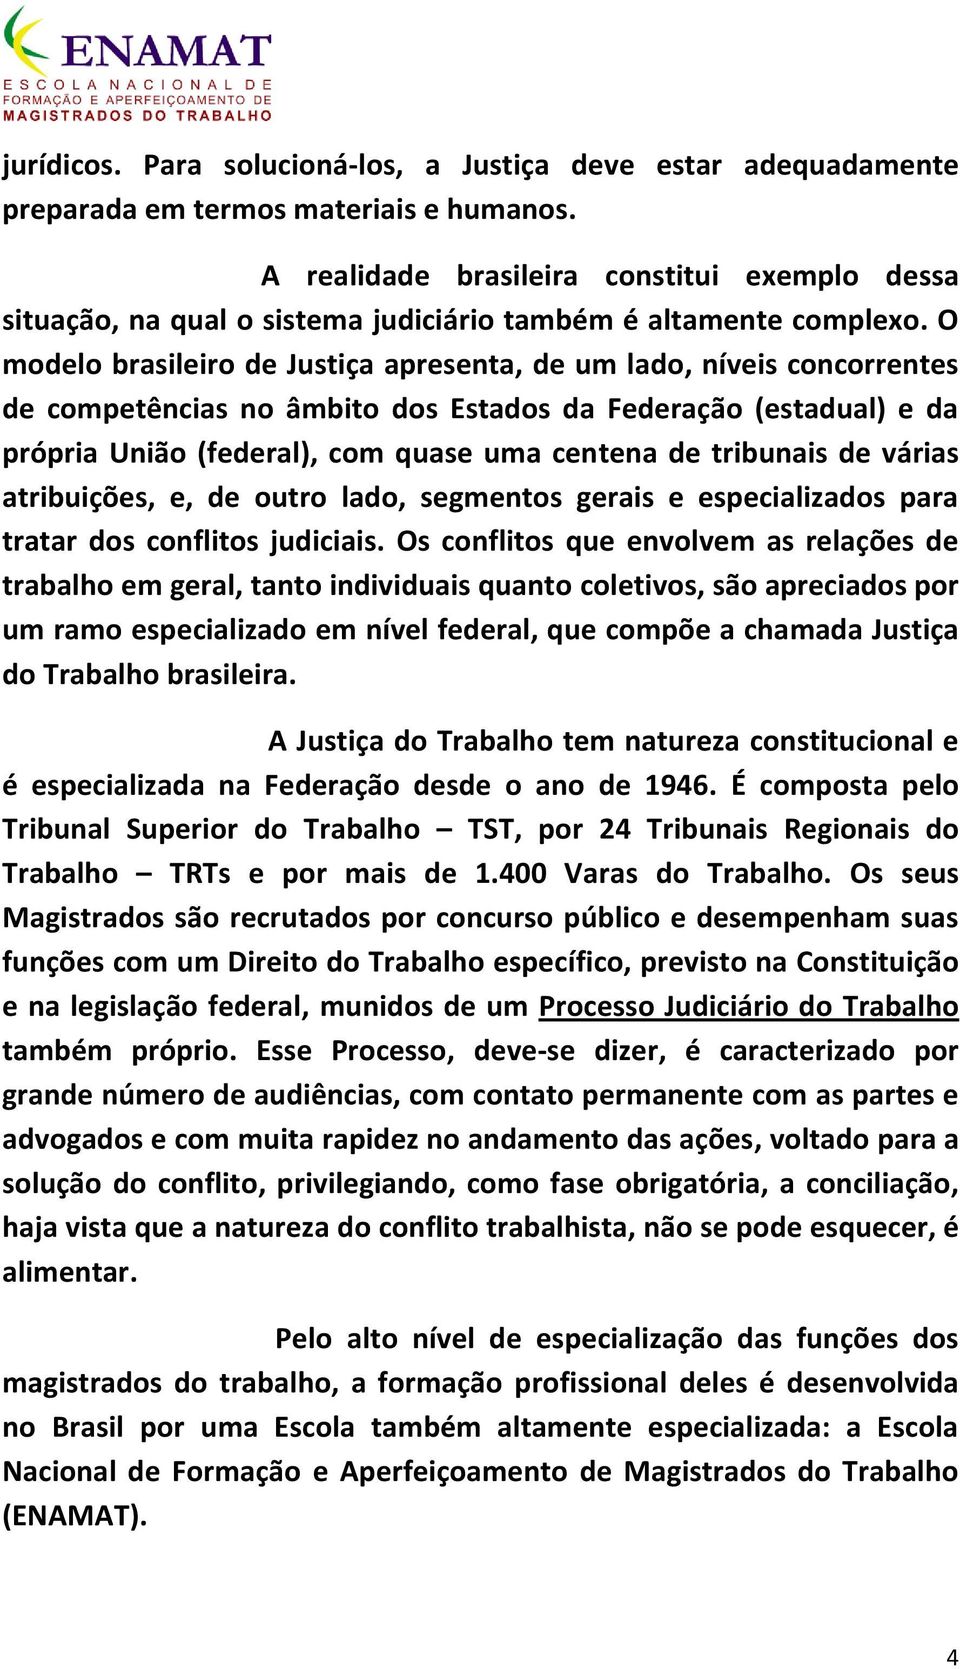 O modelo brasileiro de Justiça apresenta, de um lado, níveis concorrentes de competências no âmbito dos Estados da Federação (estadual) e da própria União (federal), com quase uma centena de